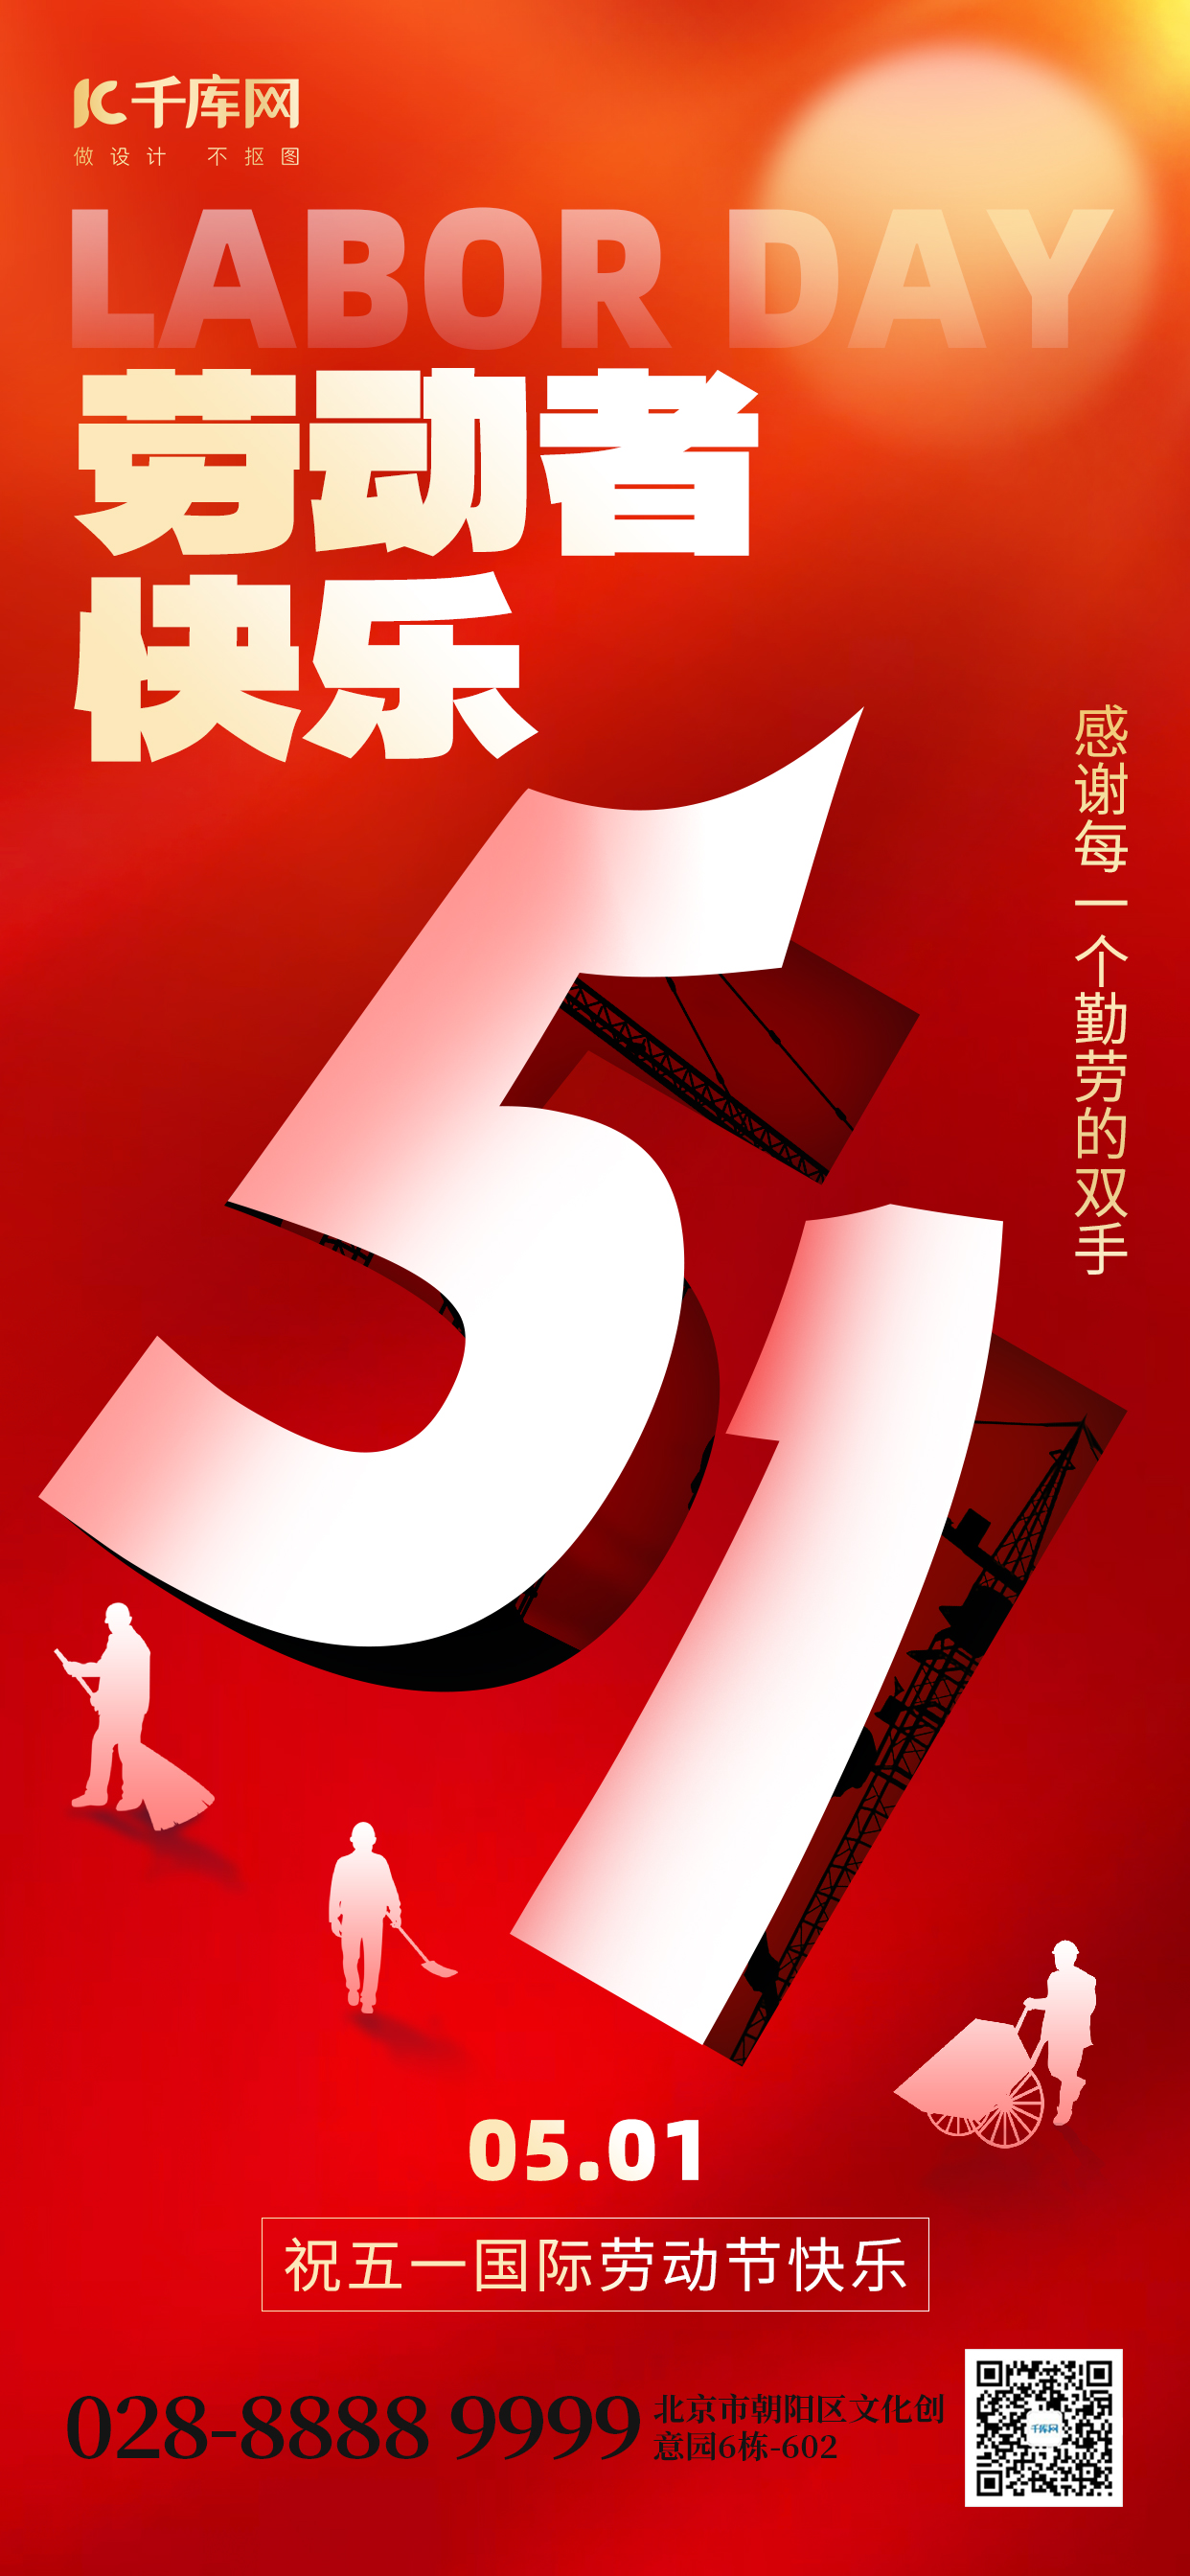 劳动节快乐51翻页红色创意手机海报ps海报制作图片